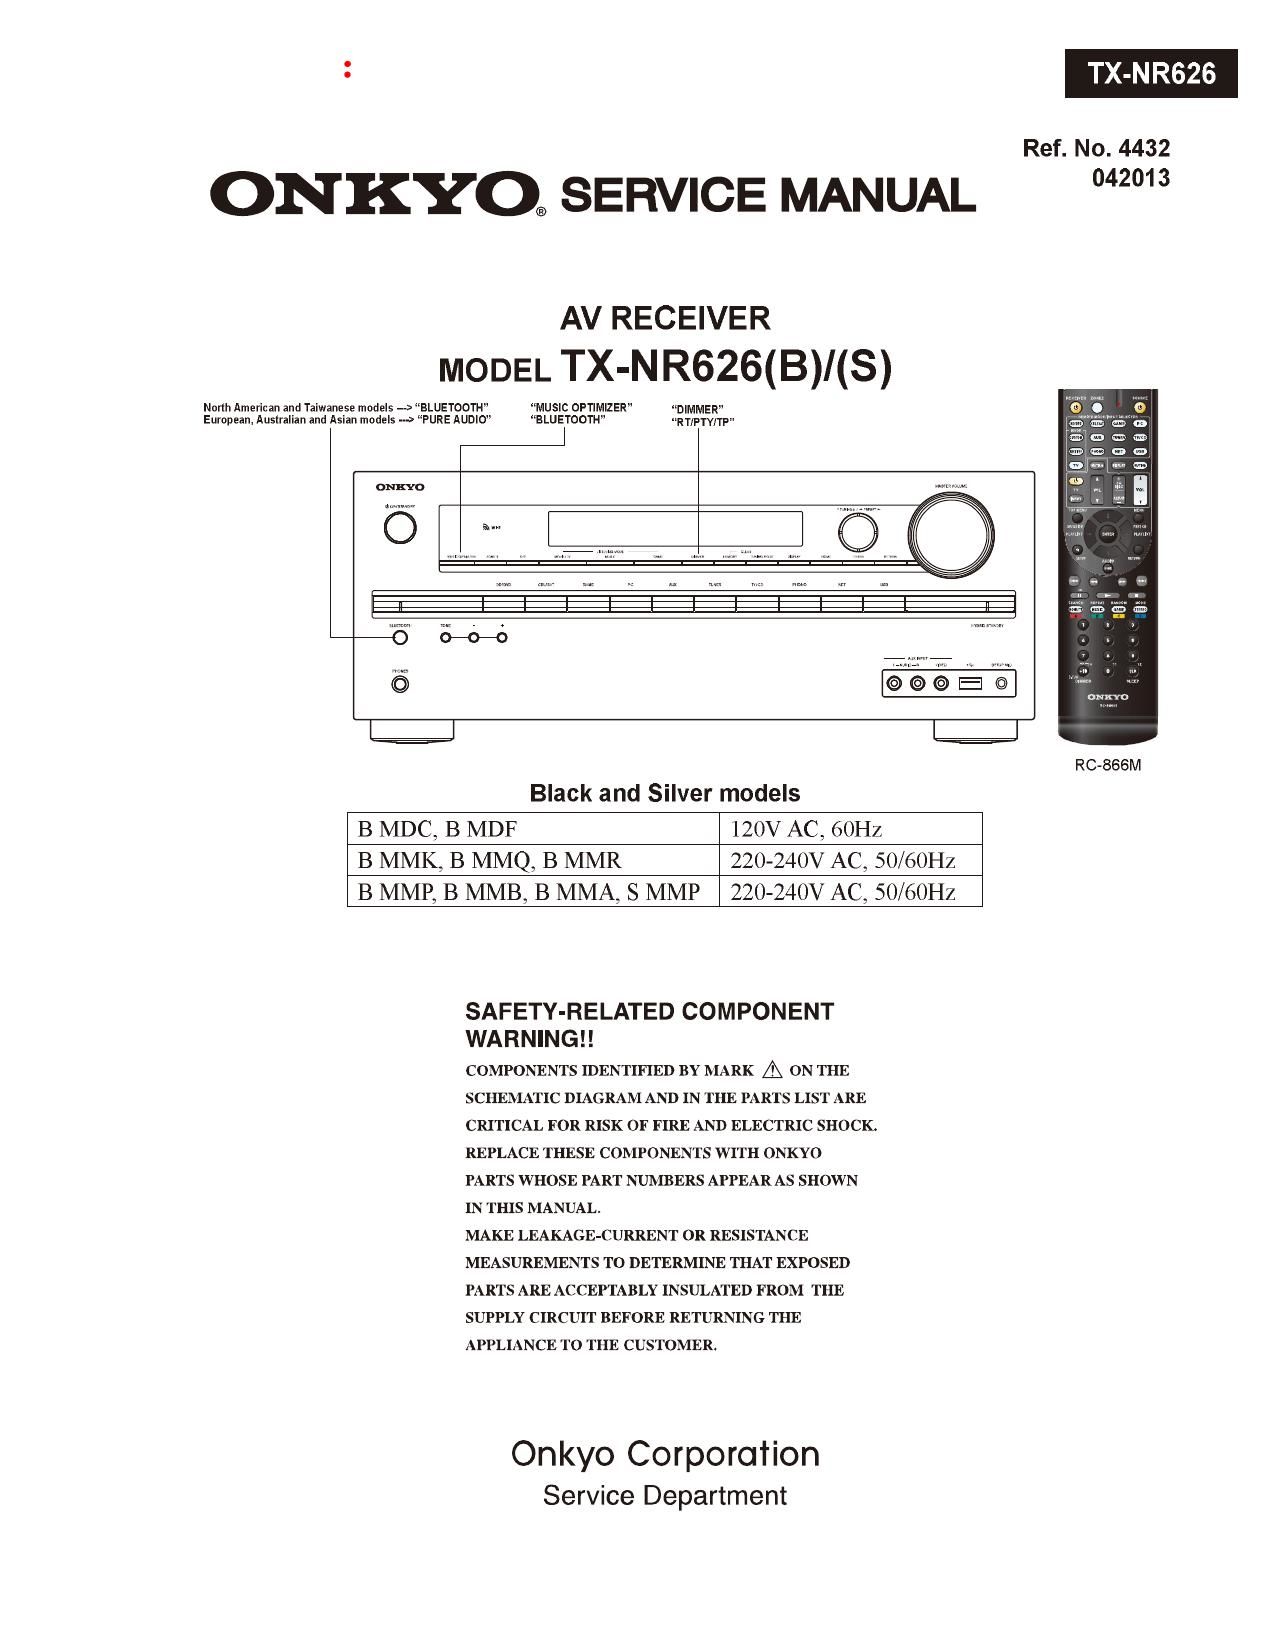 Onkyo TXNR 626 Service Manual